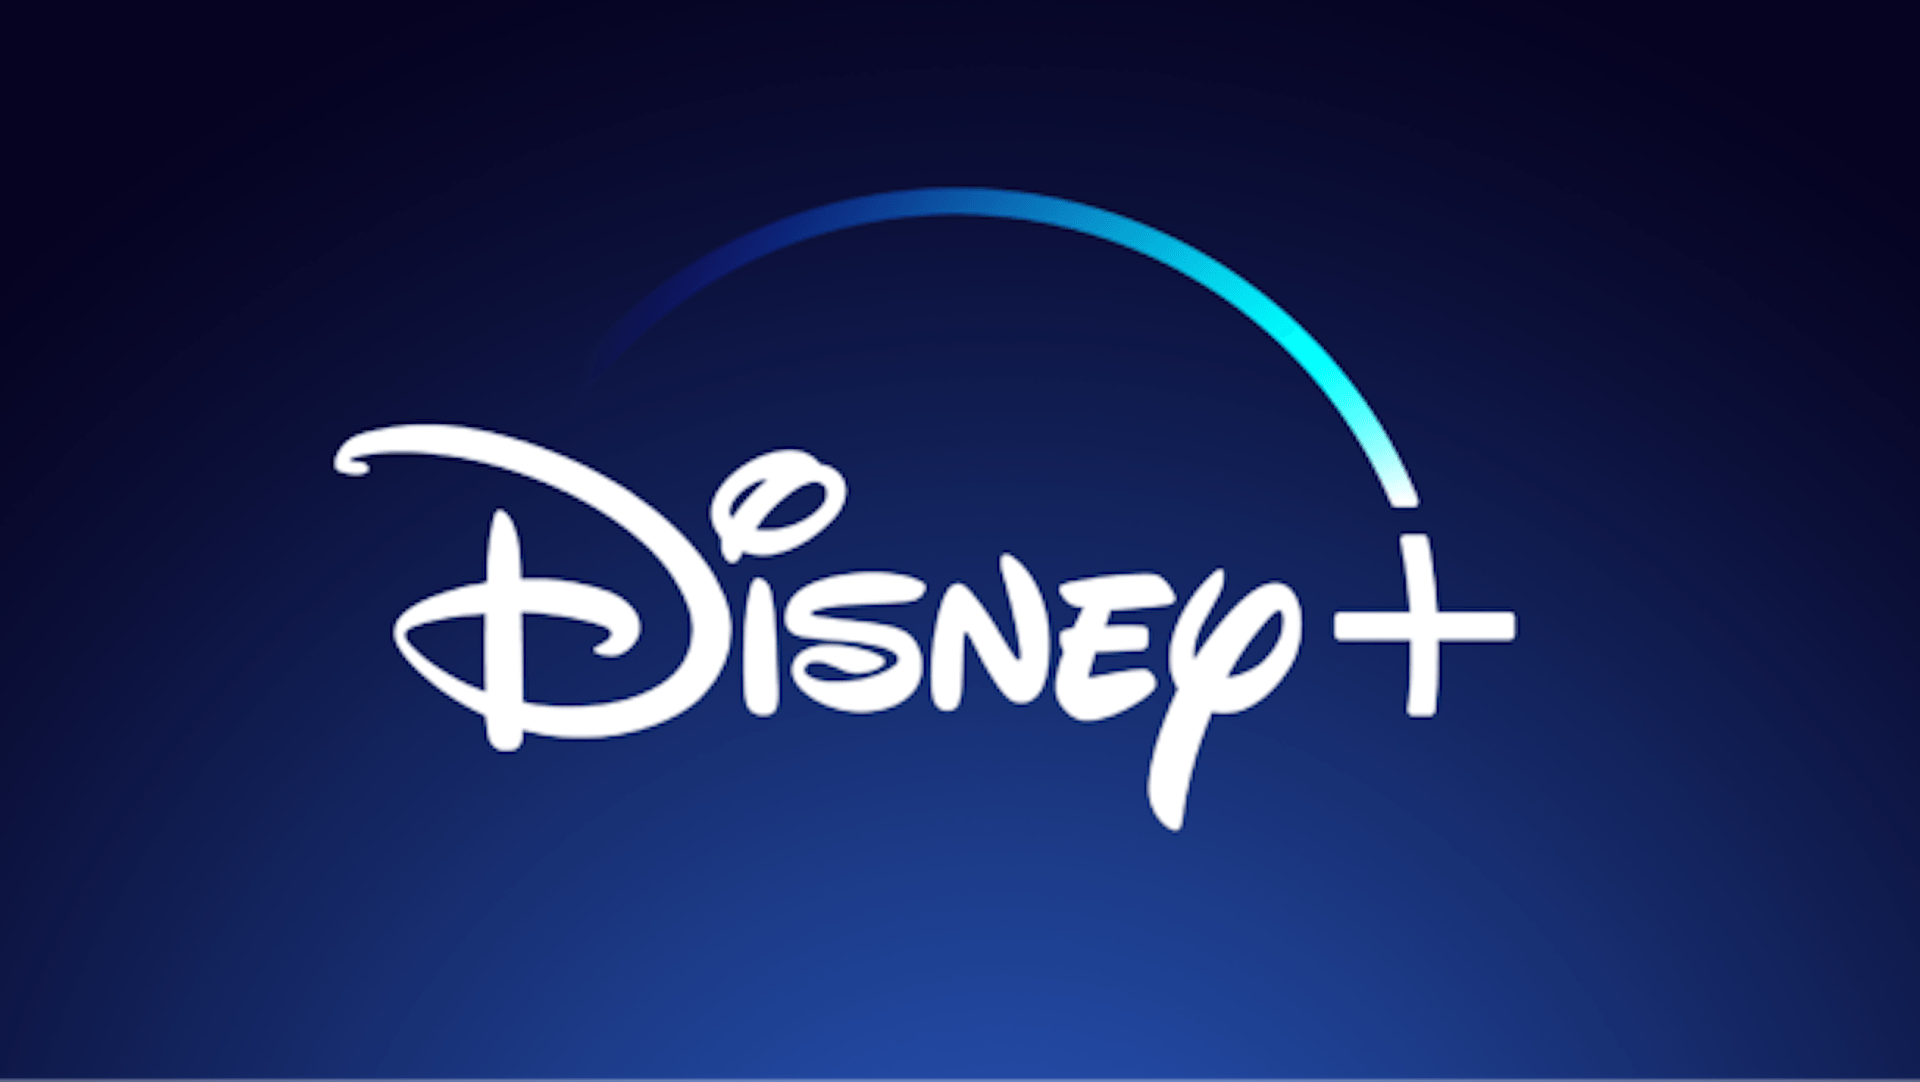 Disney+ annonce avoir franchi la barre des 100 millions d'abonnés... déjà !